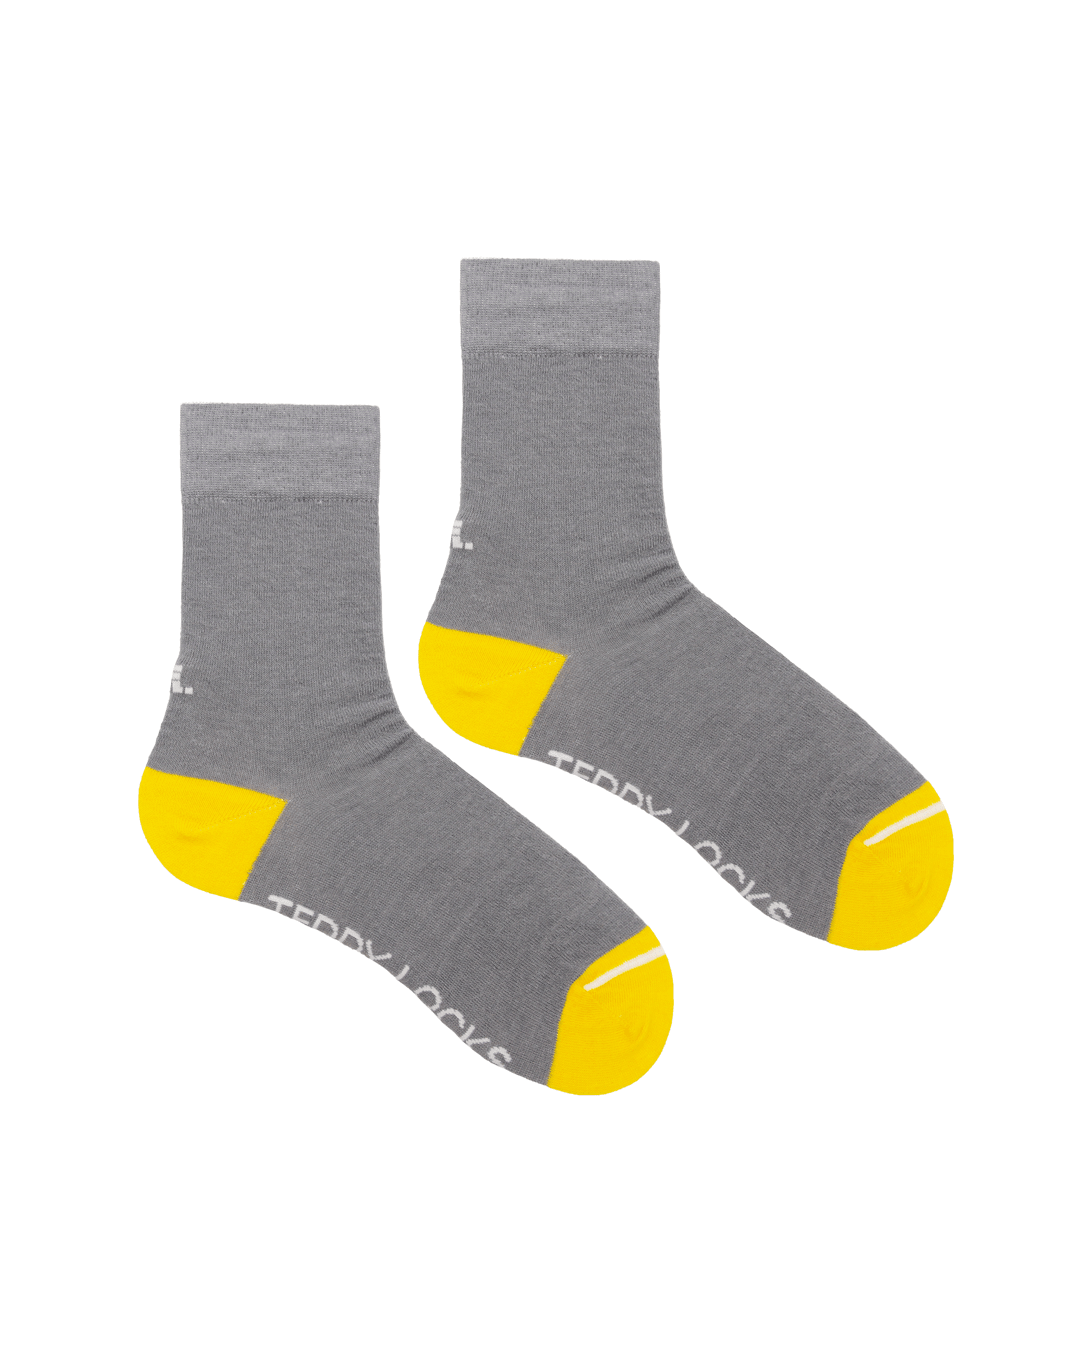 Grey crew socks designed in the uk. Seamless toe socks